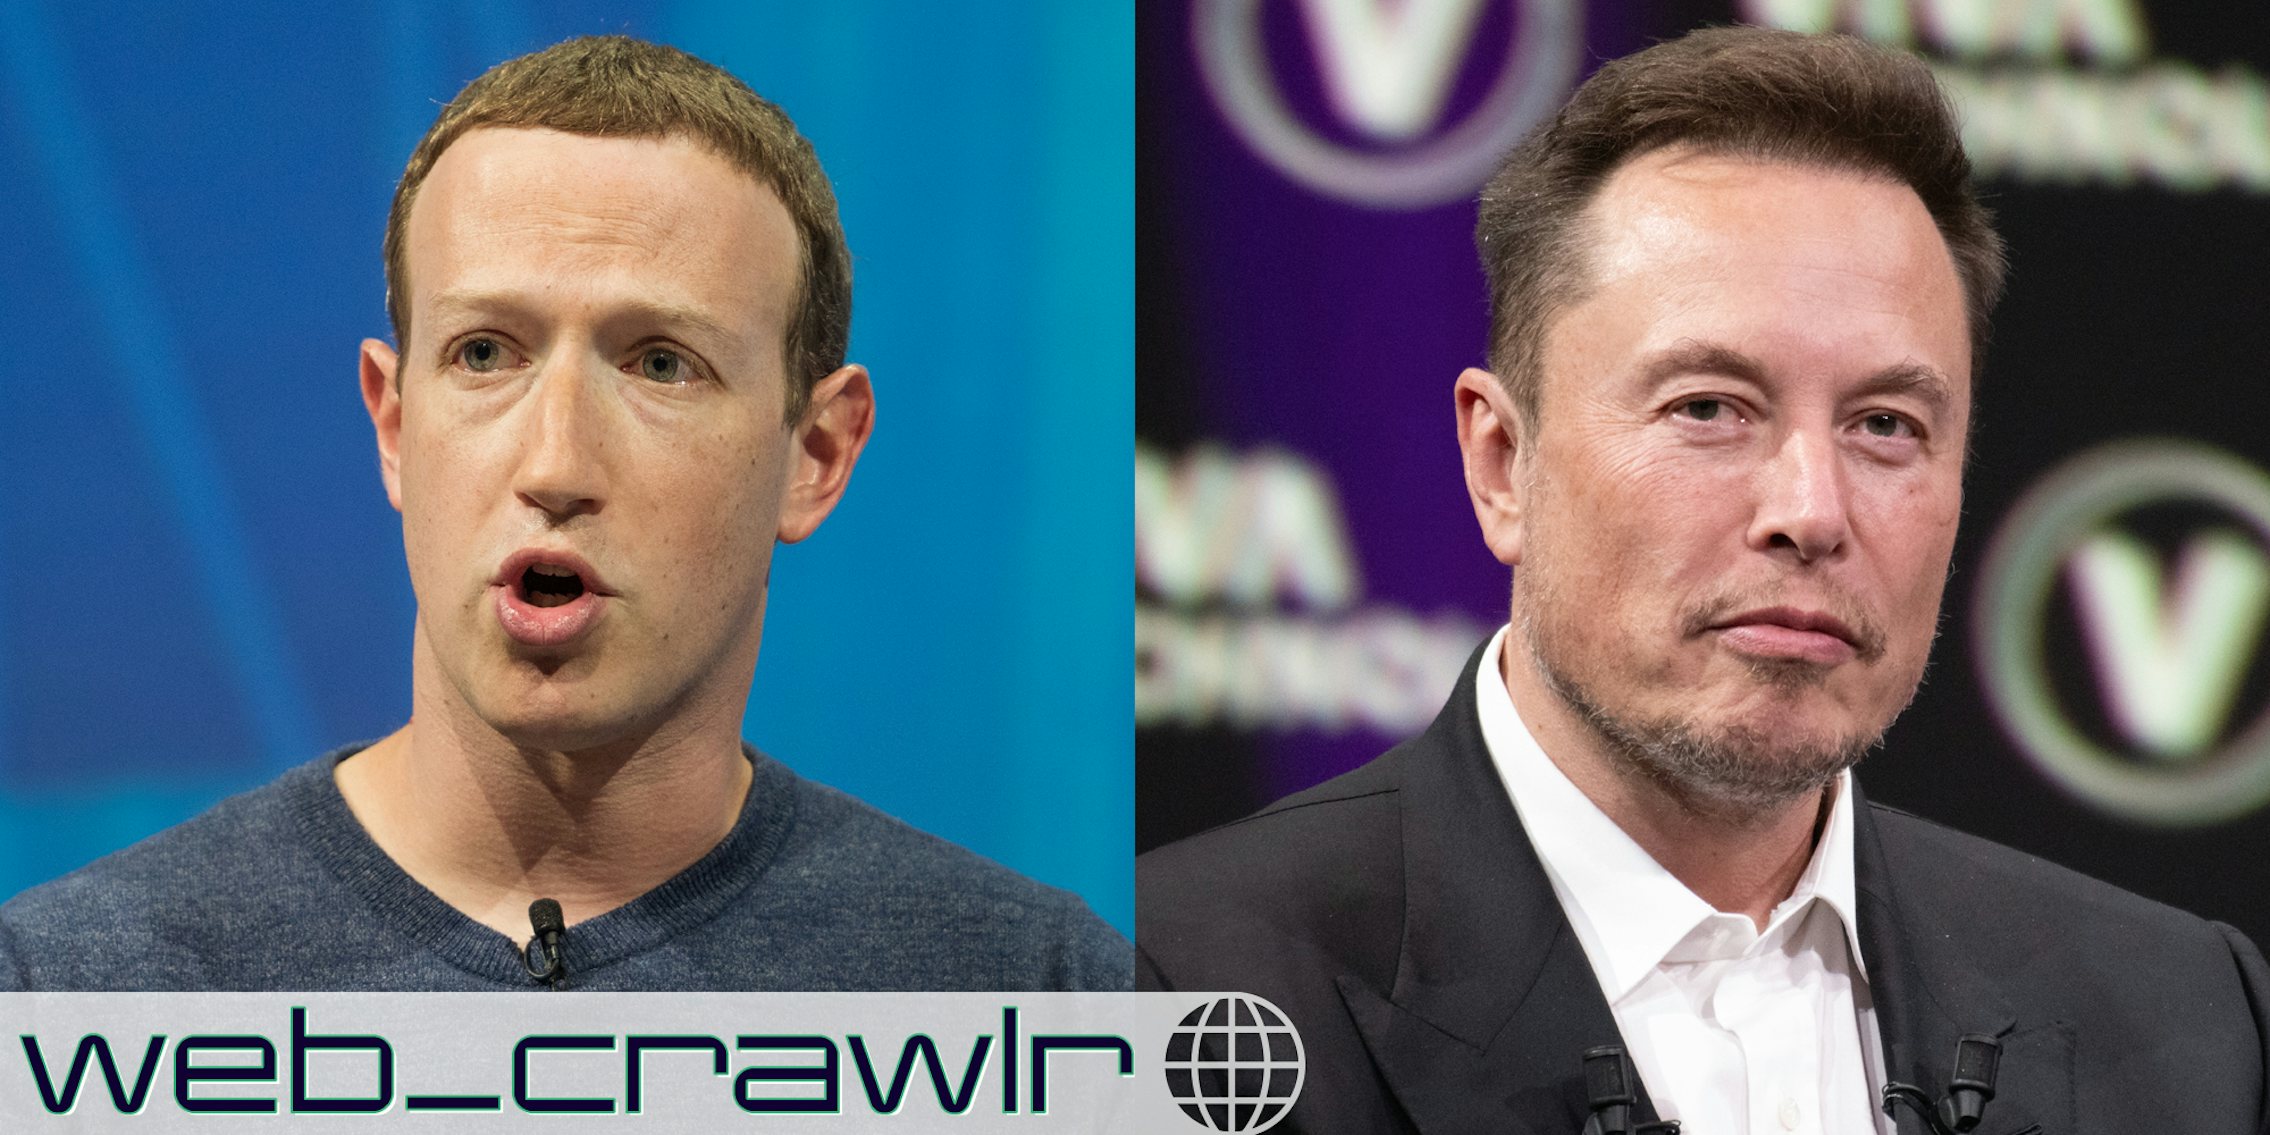 Mark Zuckerberg and Elon Musk. The Daily Dot newsletter web_crawlr logo is in the bottom left corner.